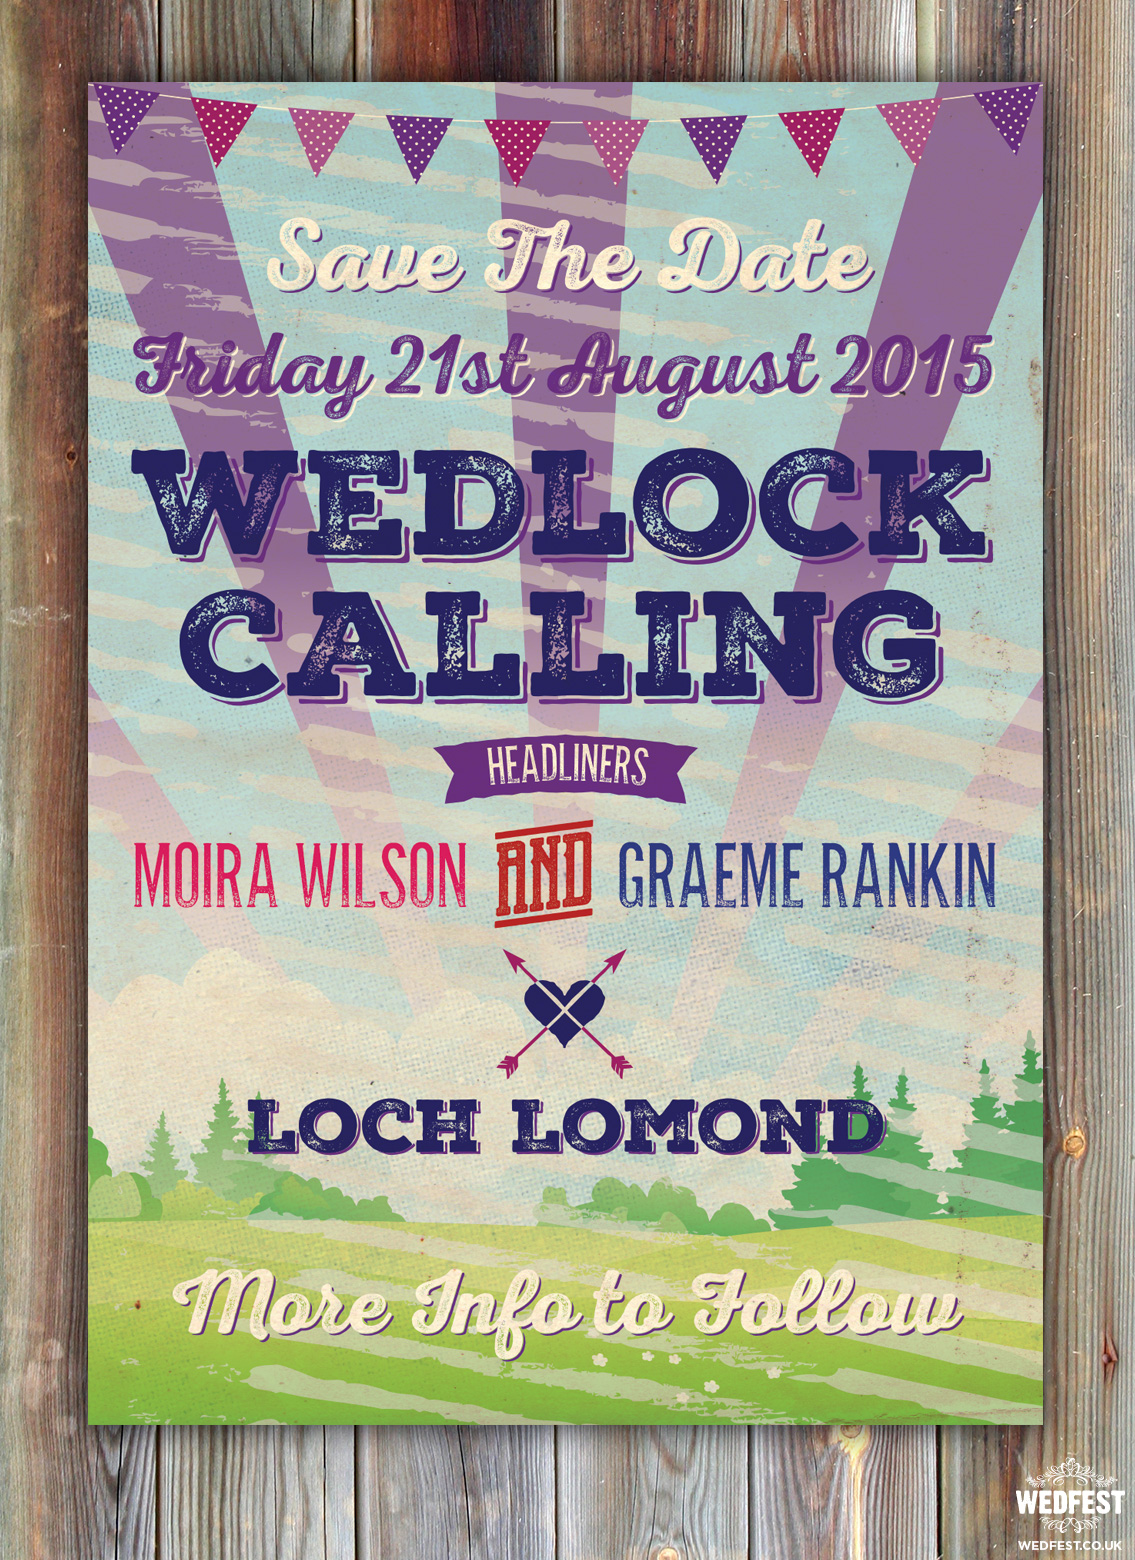 Loch Lomond Scotland Wedding save the date